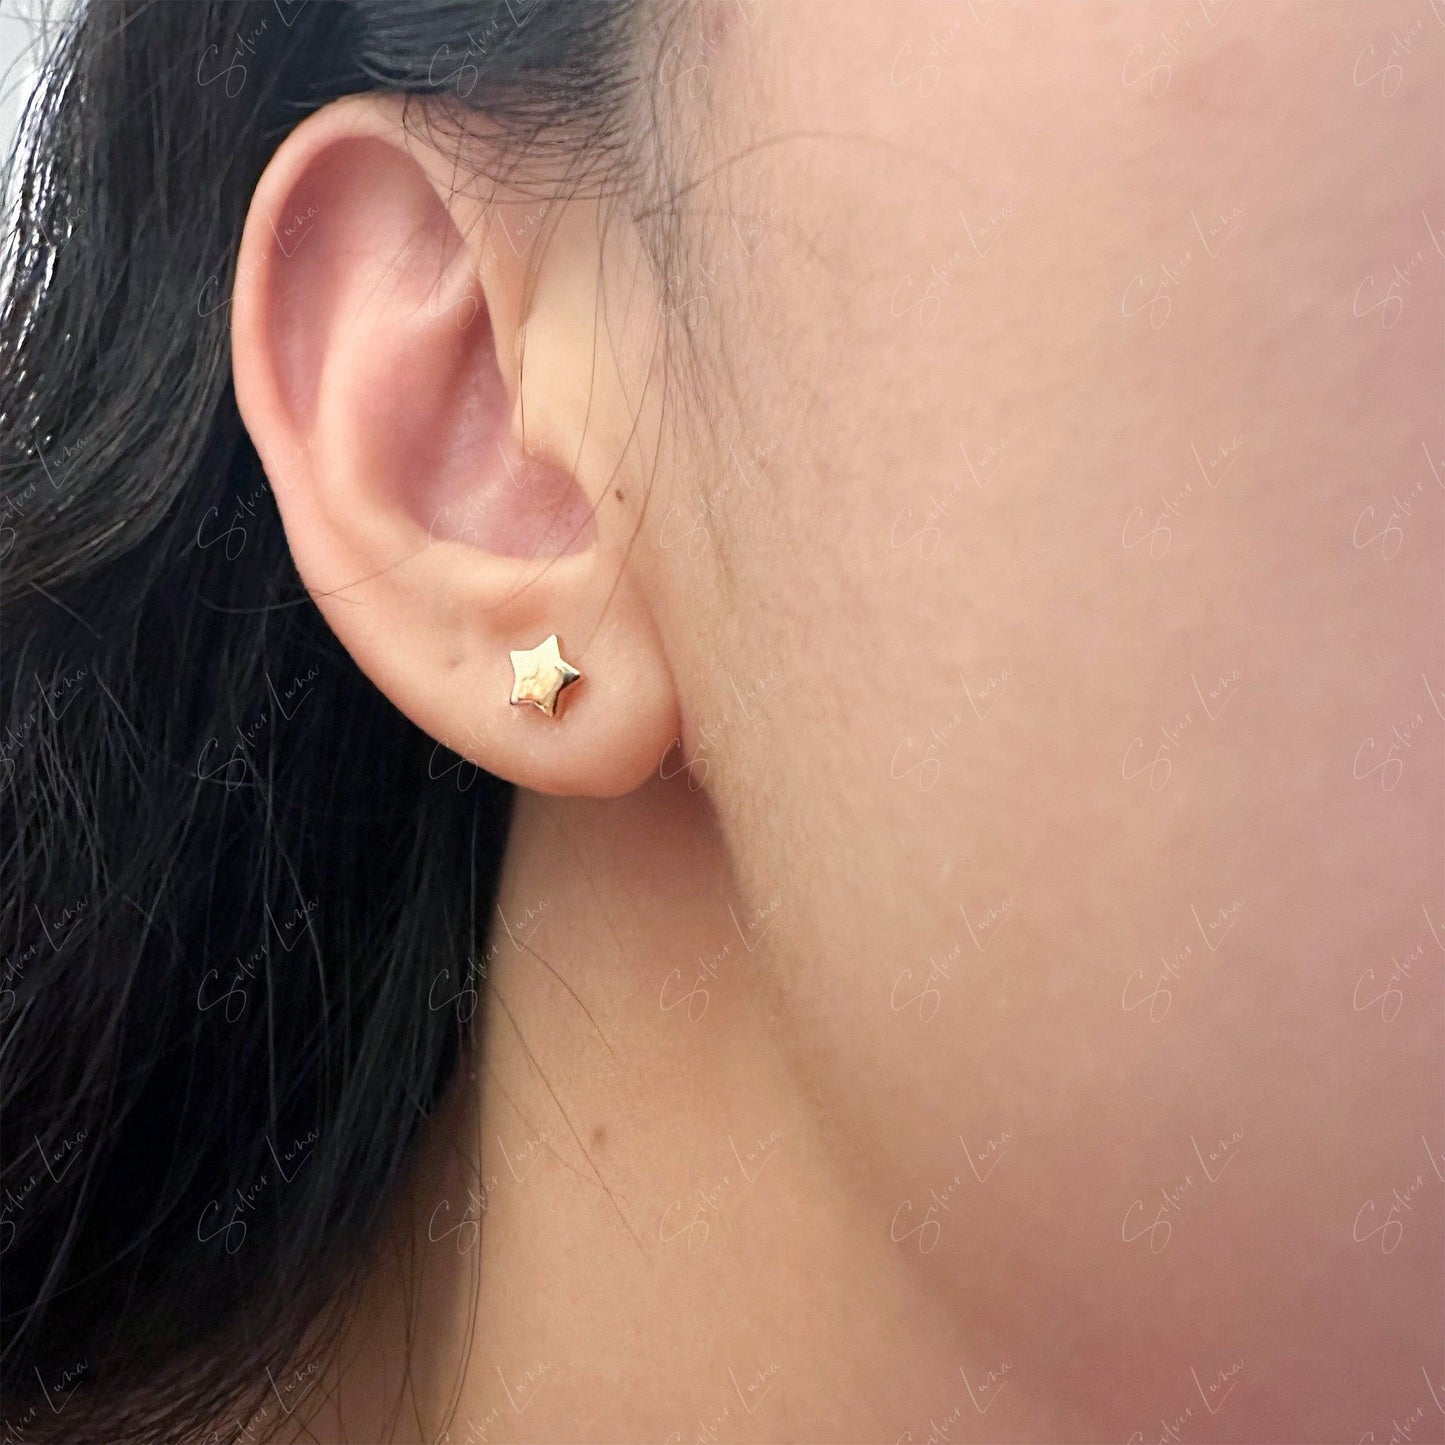 rose gold star stud earrings